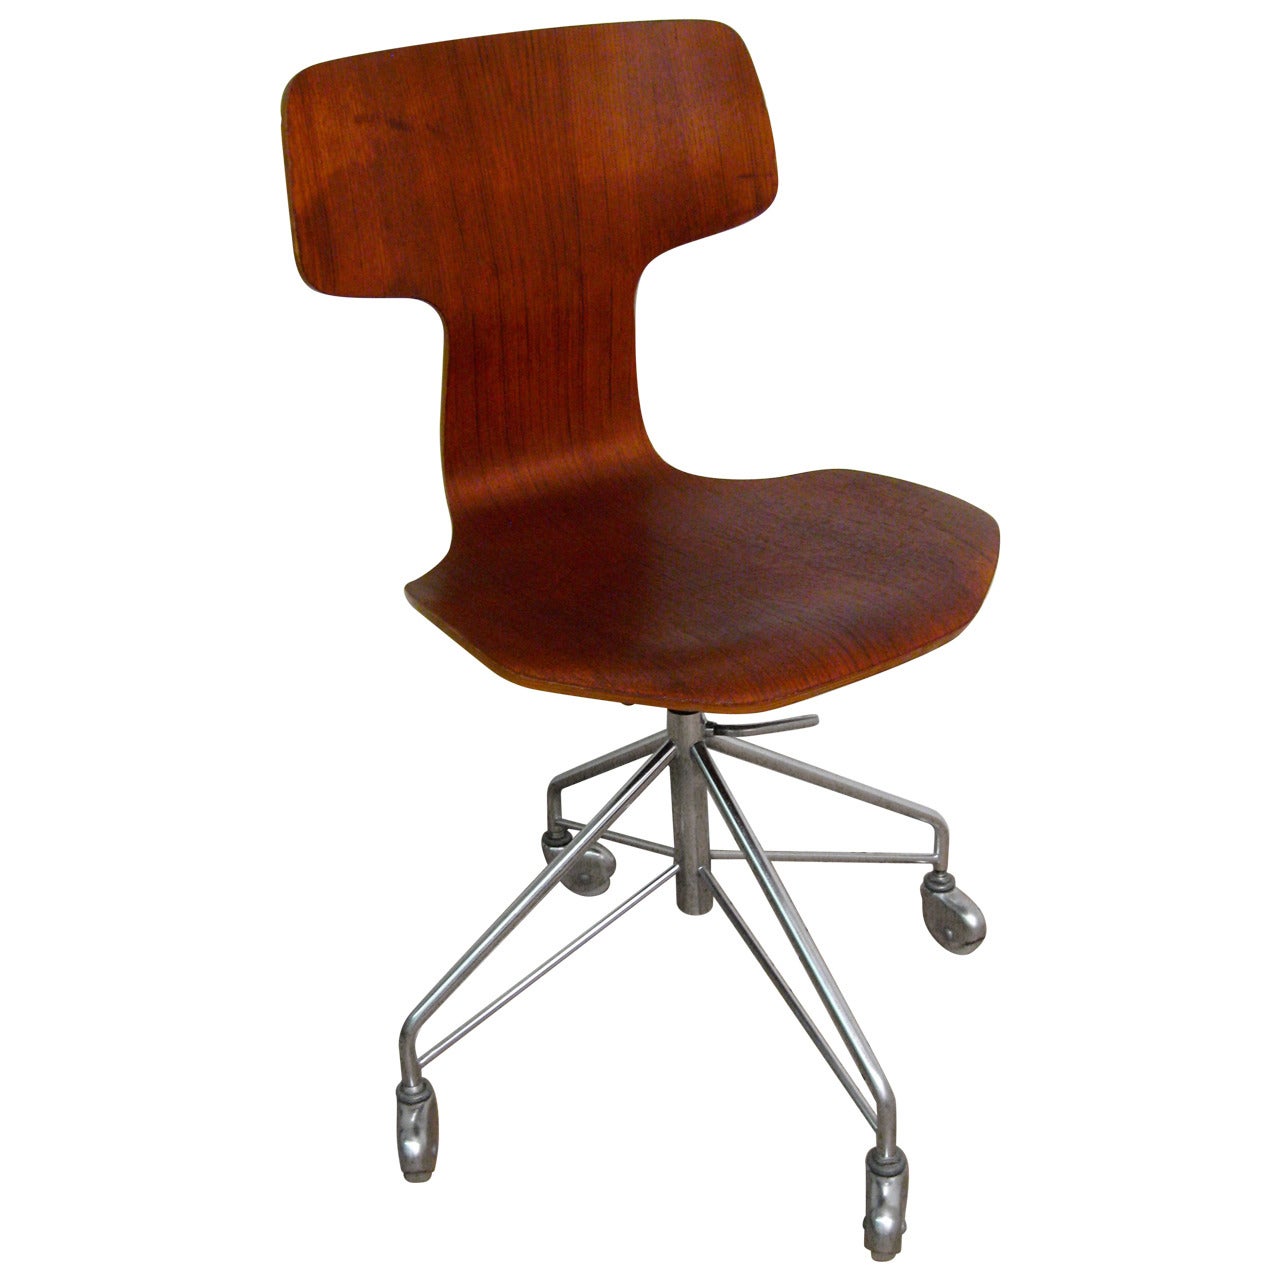 Arne Jacobsen for Fritz Hansen Teak Desk Chair Model 3103